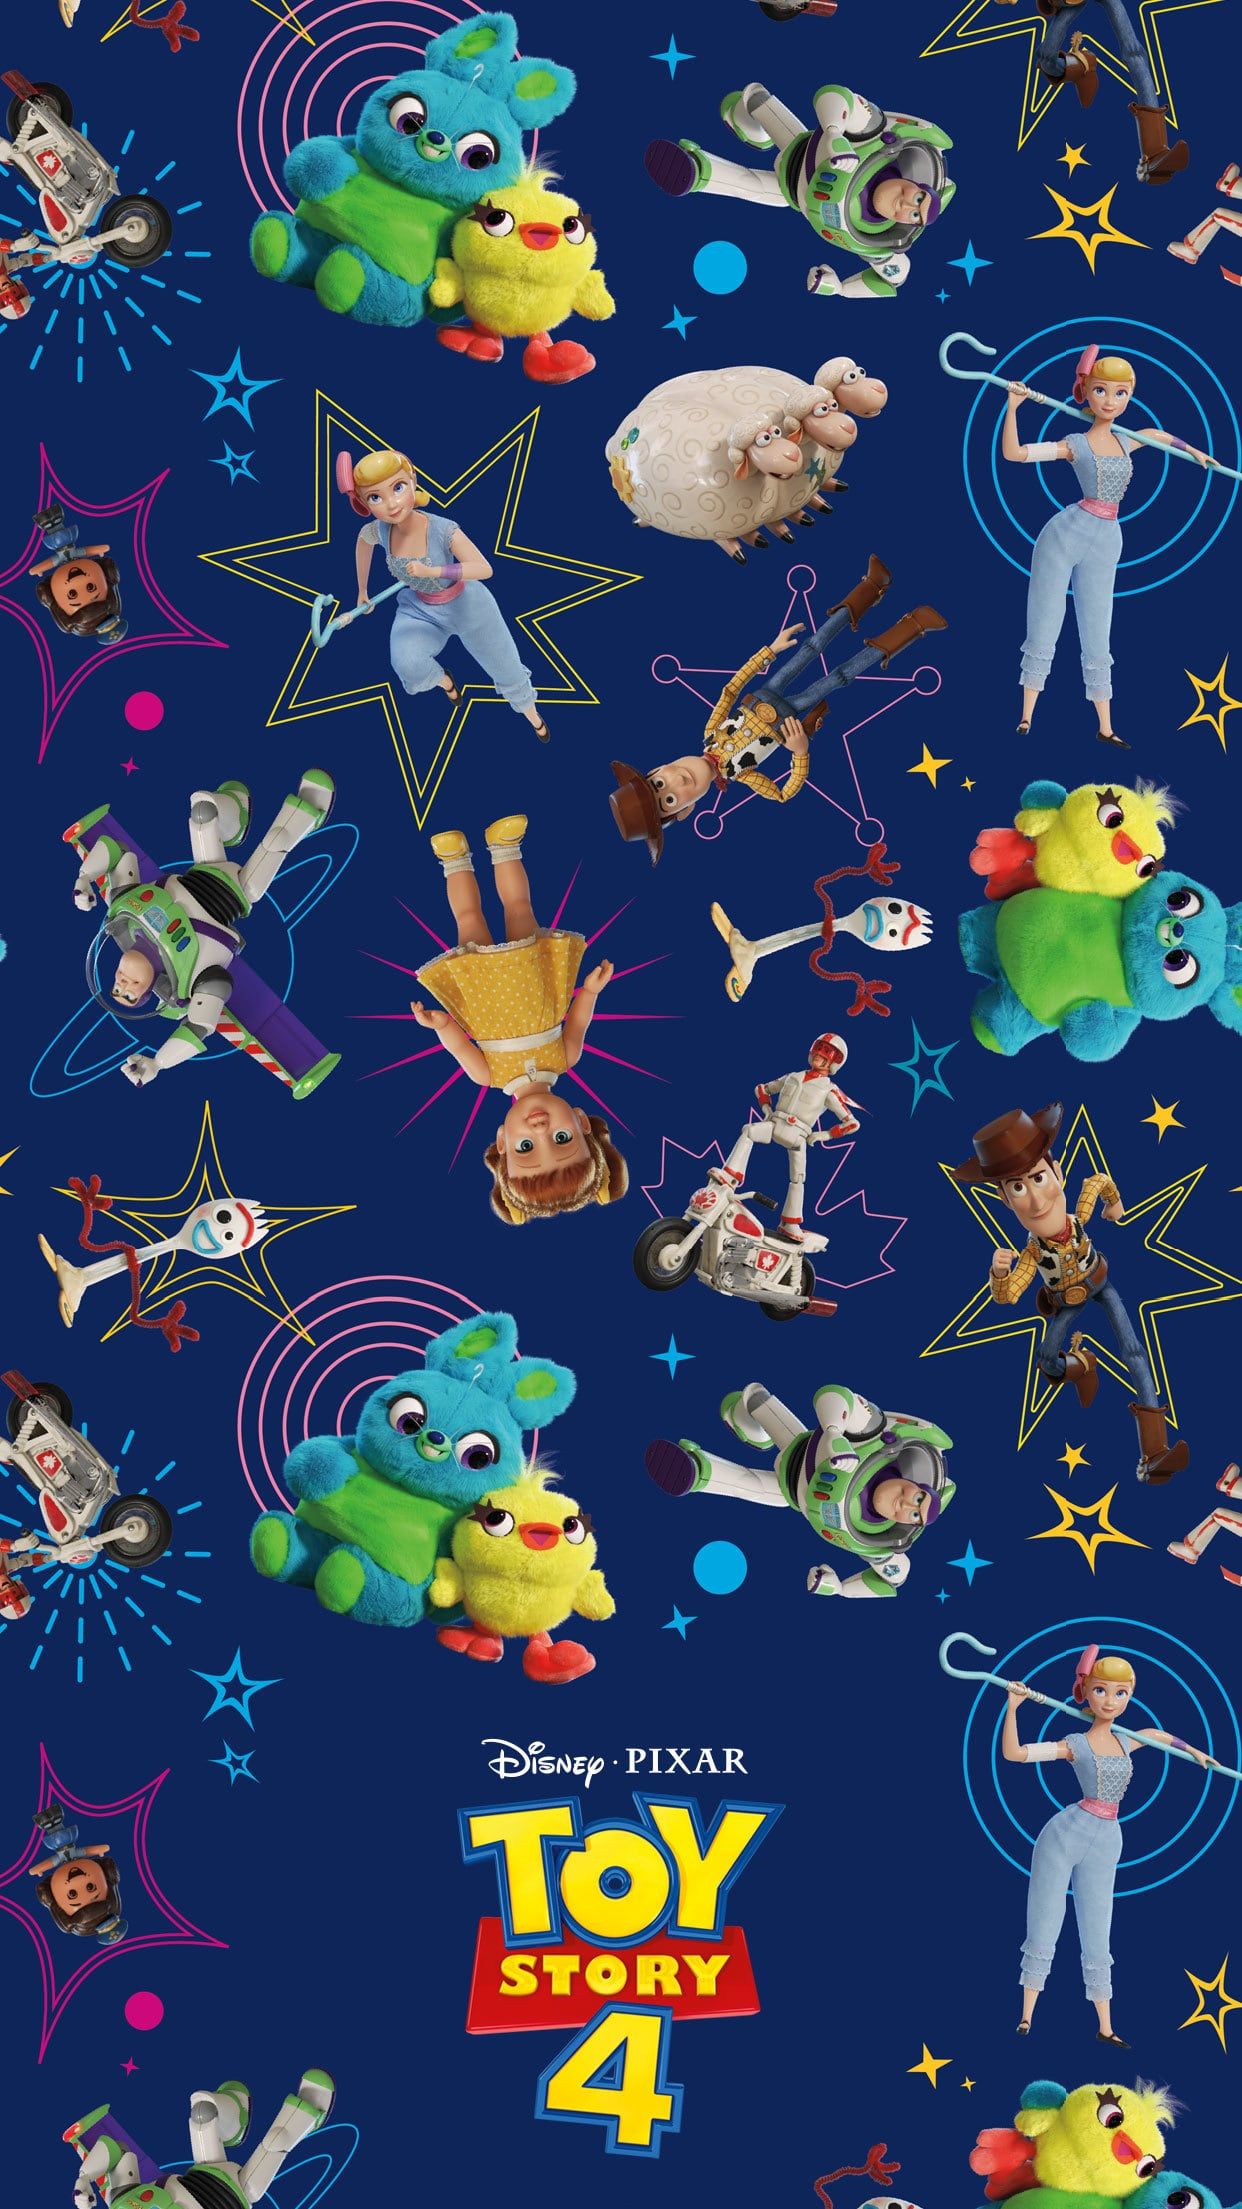 Ir al infinito y más allá con estos Disney y Pixar Toy Story 4